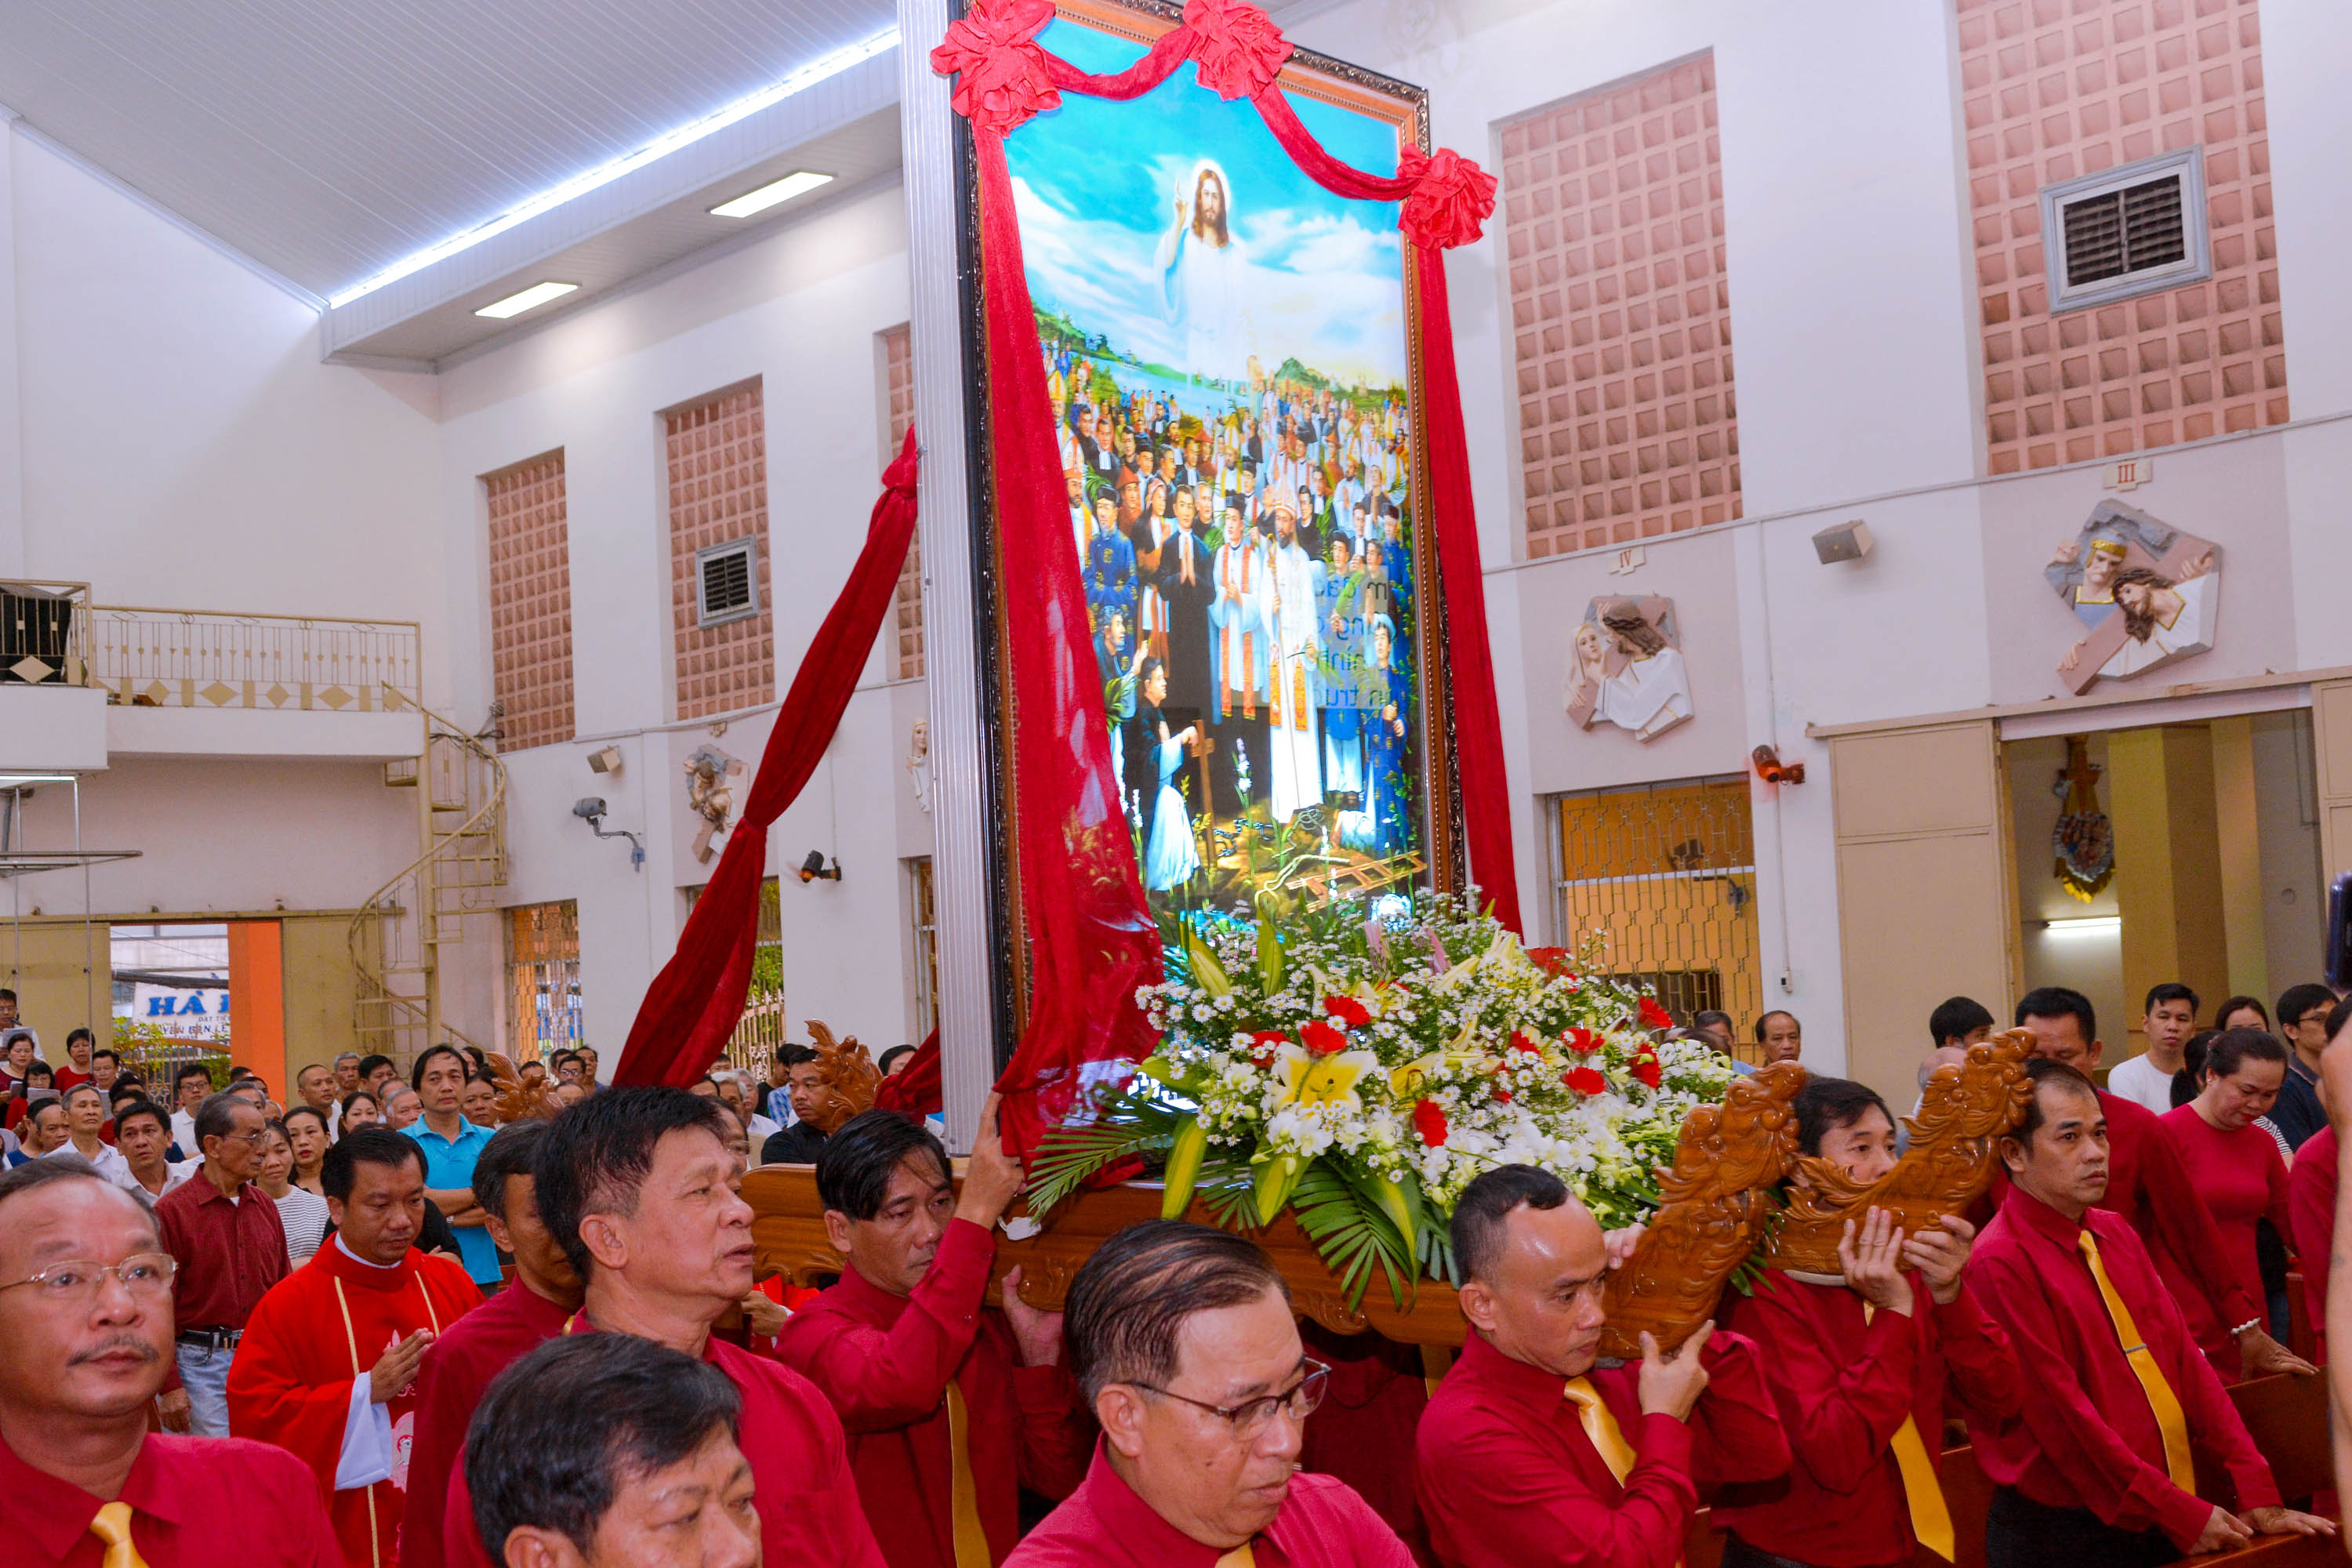 Giáo xứ Hà Đông: Mừng lễ Các Thánh Tử Đạo Việt Nam - Bổn mạng Hội đồng Mục vụ 14-11-2020